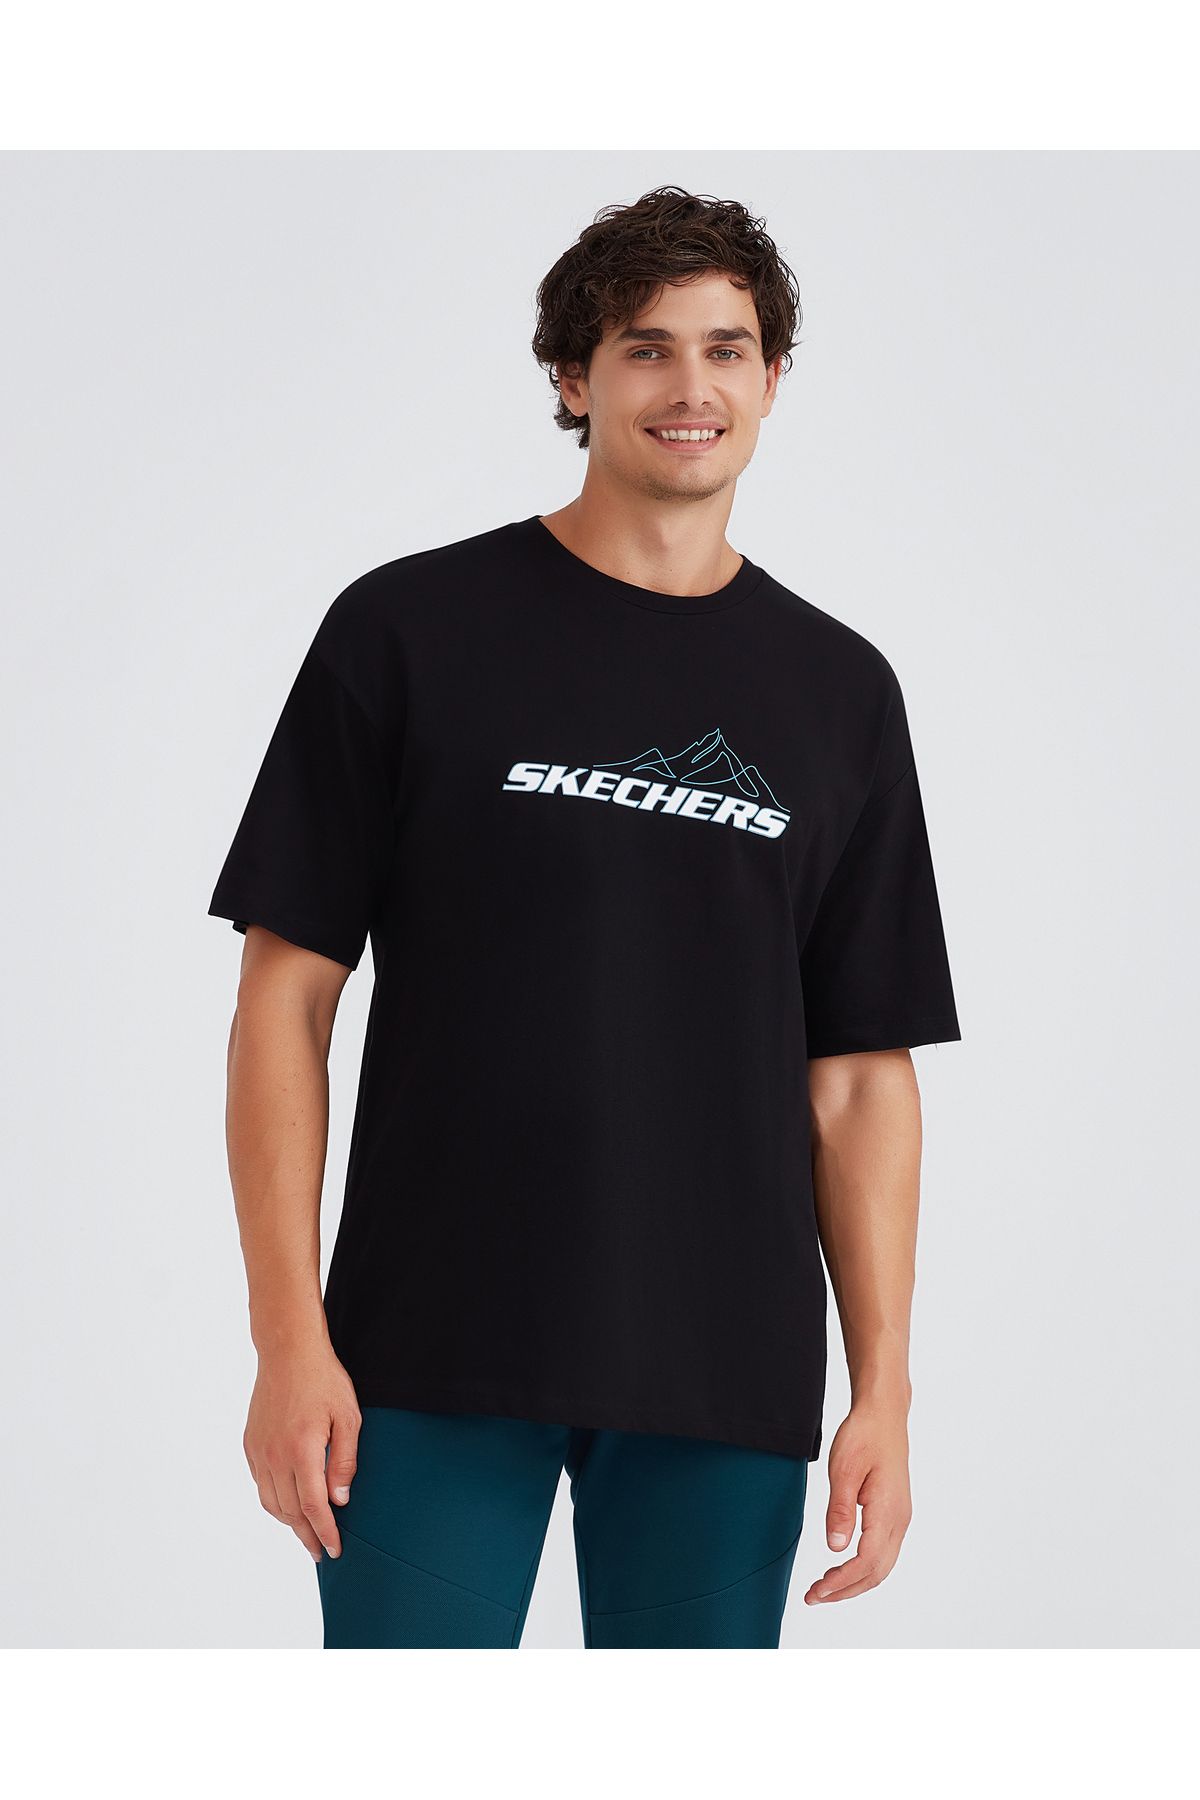 Skechers M Graphic Tee Crew Neck T-Shirt Erkek Siyah Tshirt S232436-001